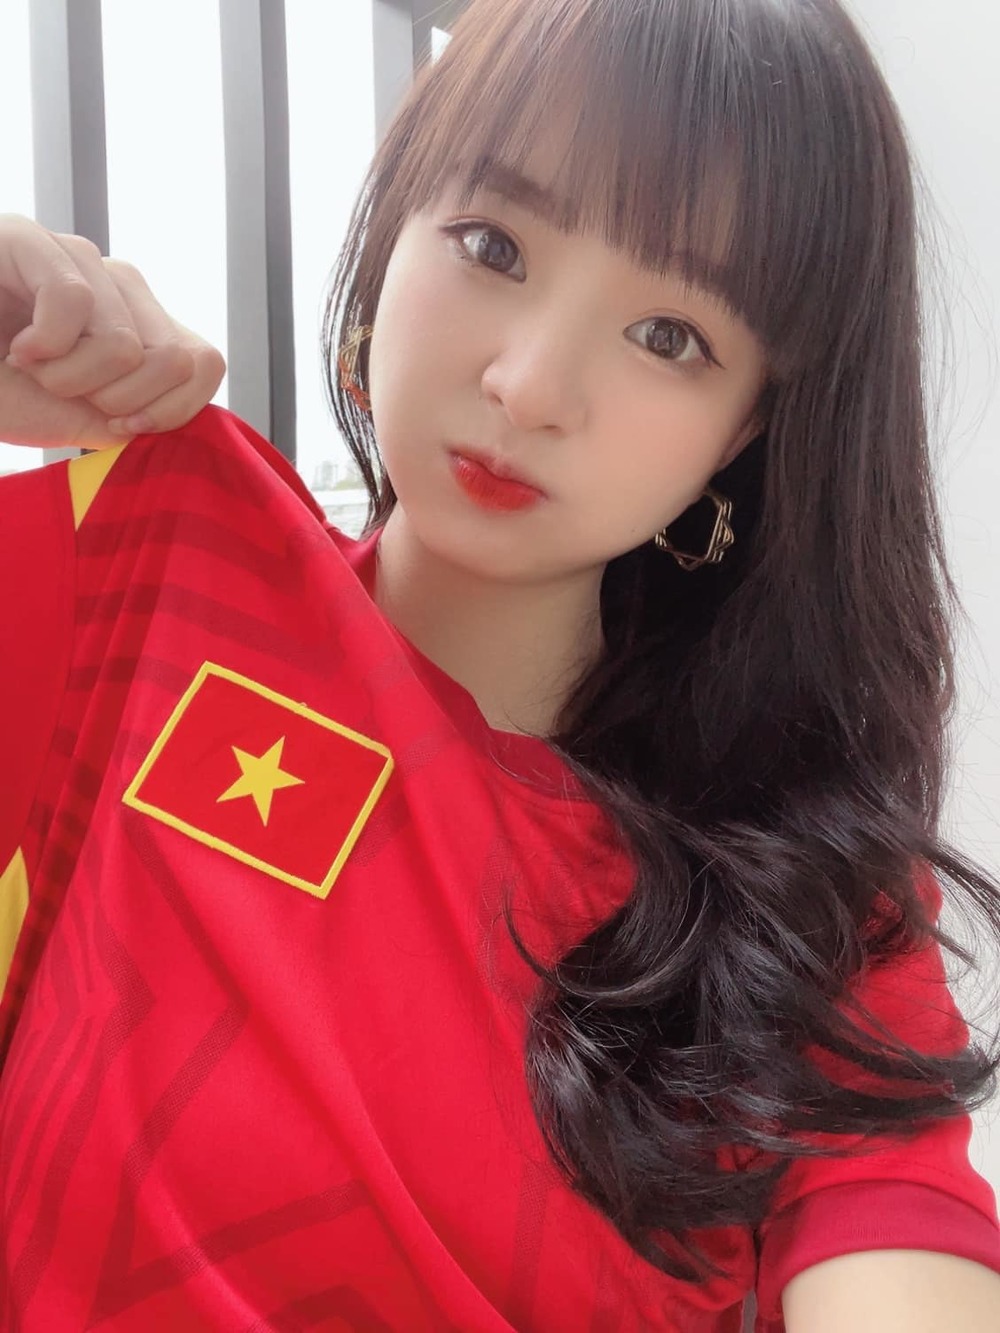  
Cô nàng gây xao xuyến khi mặc áo ĐT bóng đá Việt Nam. 